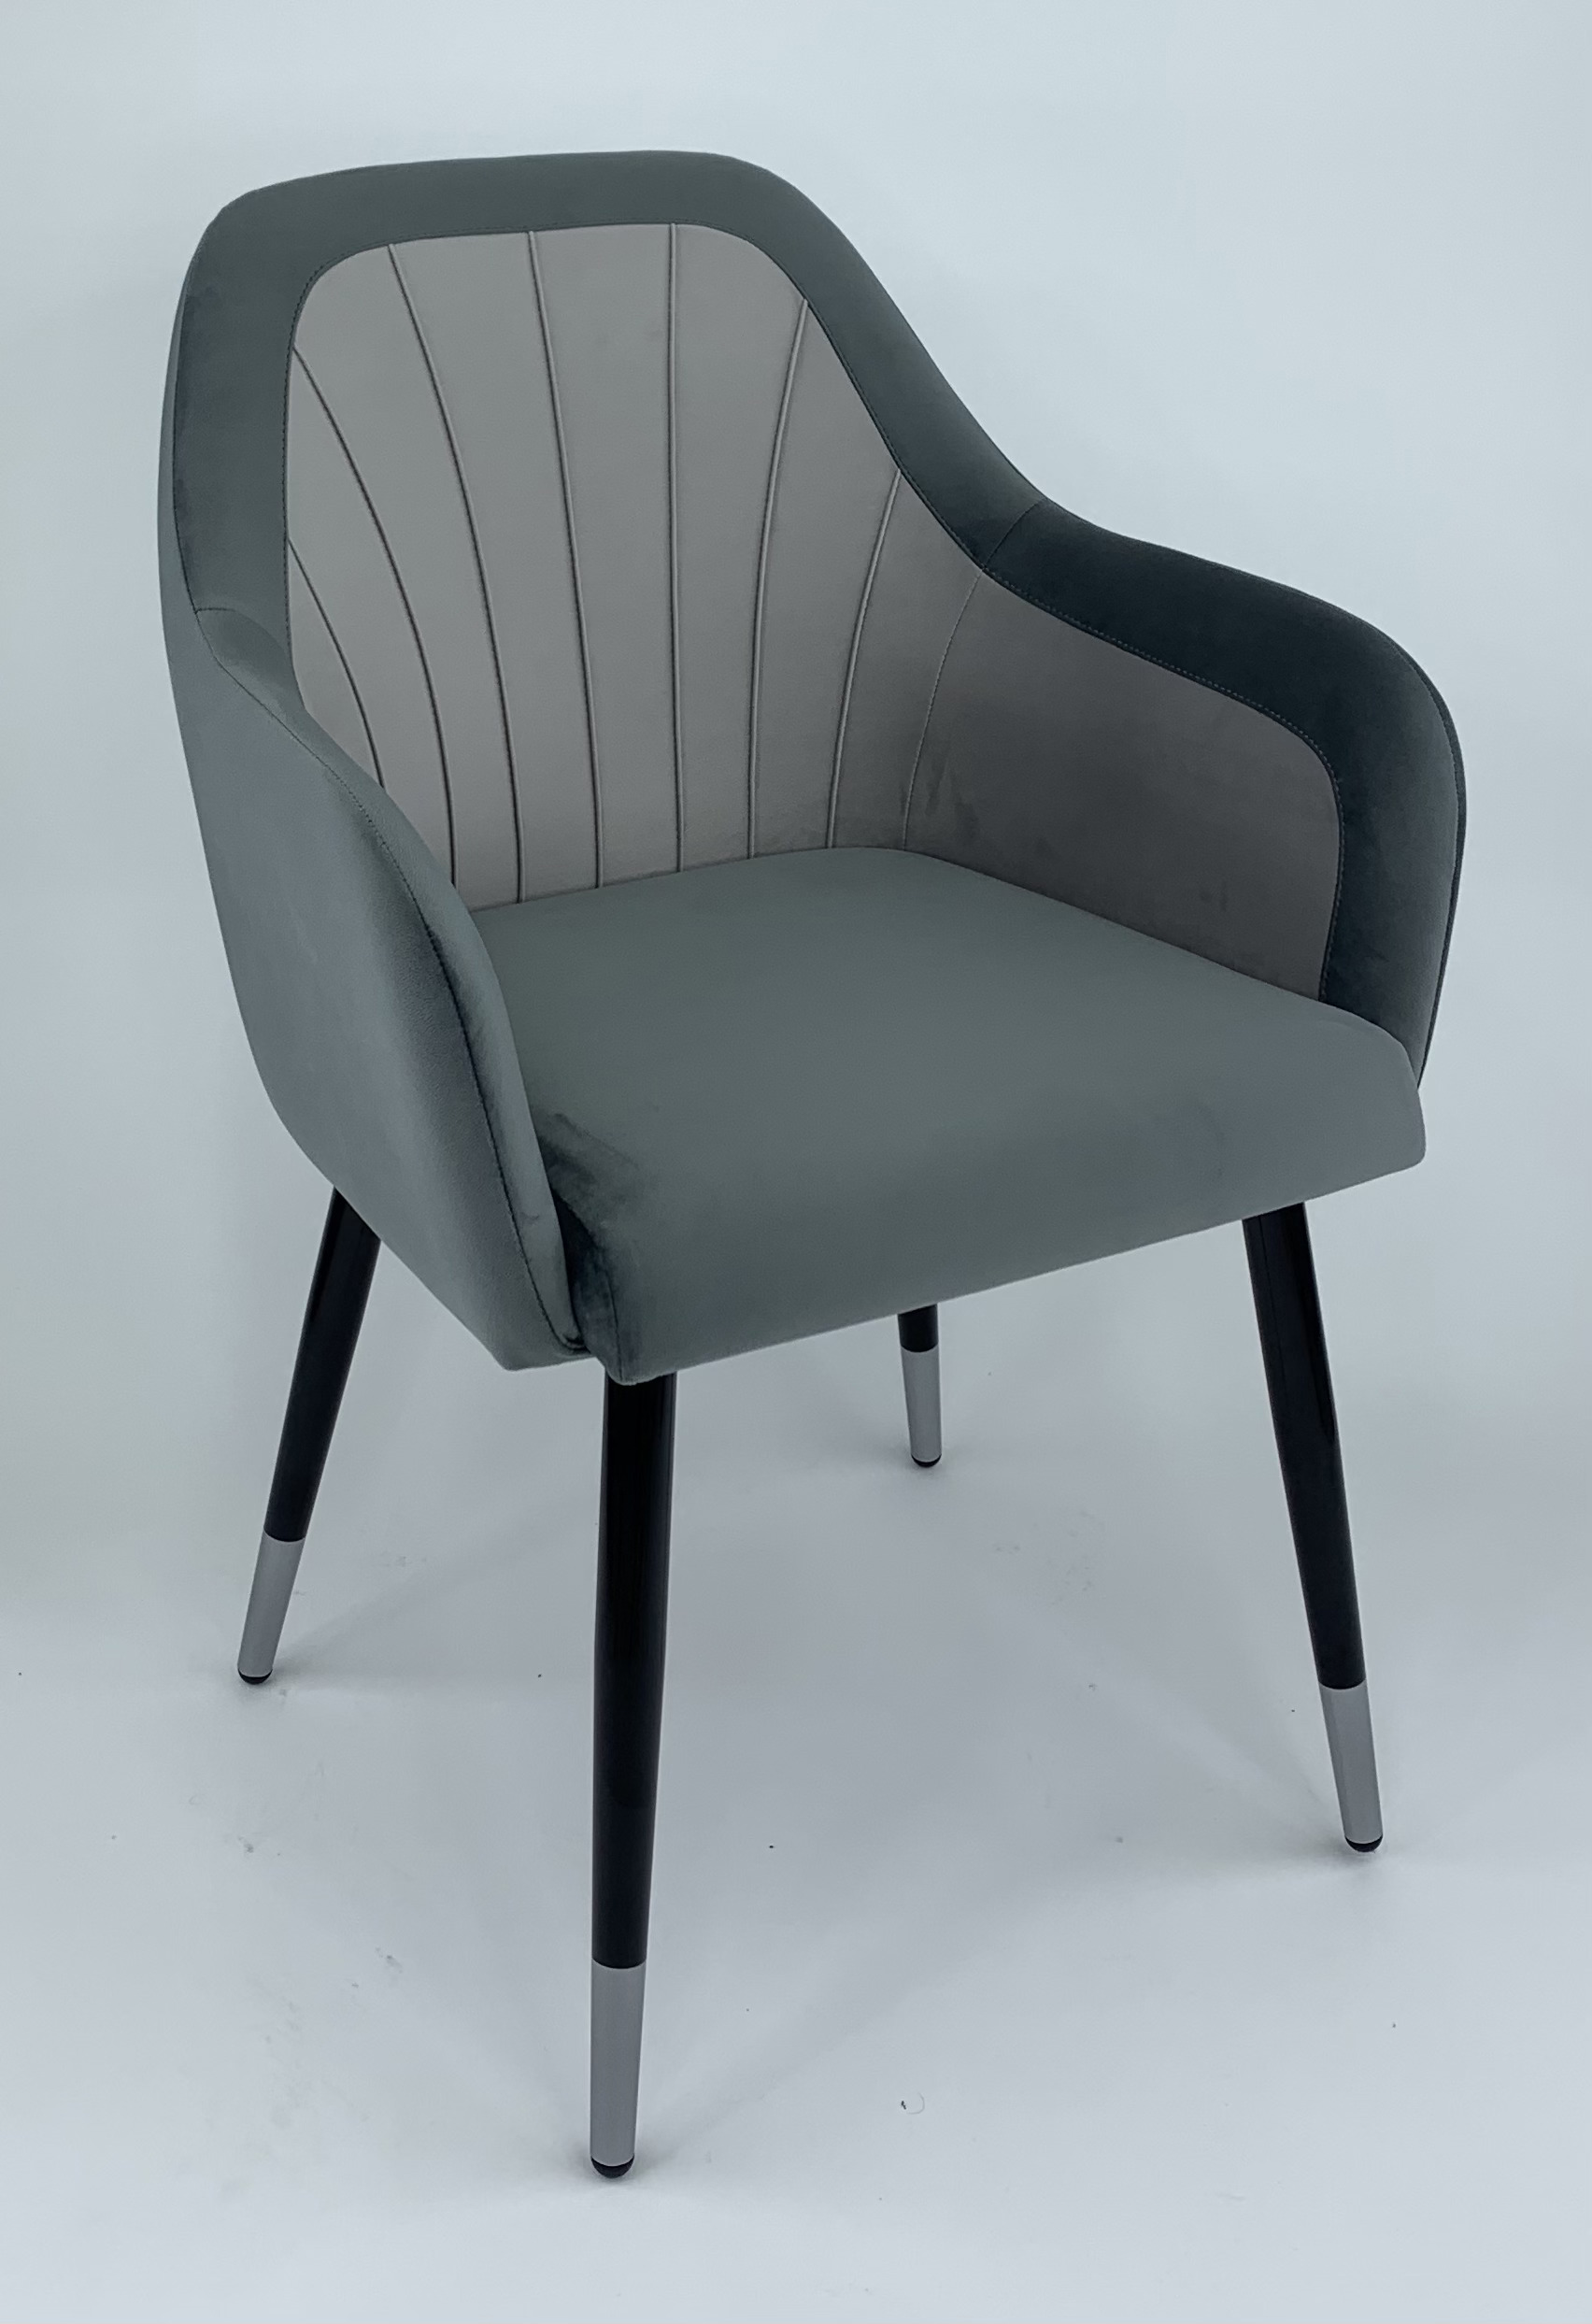 90203159 Стул-кресло мебель для столовой/гостинной/спальни цвет серый Агат STLM-0131107 MILAVIO